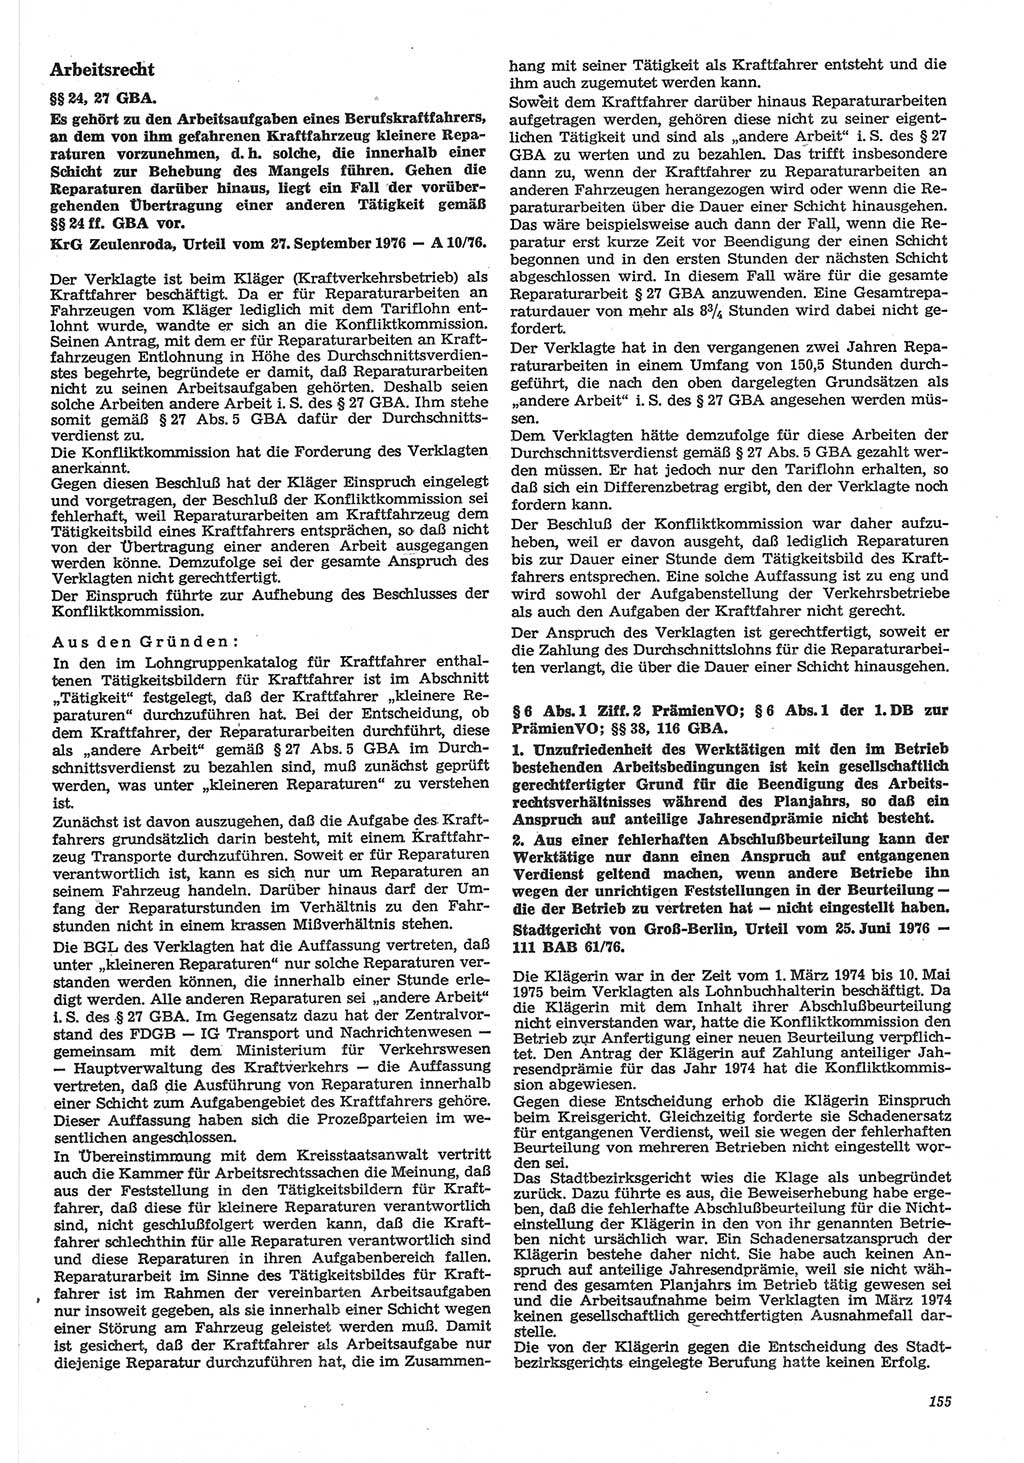 Neue Justiz (NJ), Zeitschrift für Recht und Rechtswissenschaft-Zeitschrift, sozialistisches Recht und Gesetzlichkeit, 31. Jahrgang 1977, Seite 155 (NJ DDR 1977, S. 155)